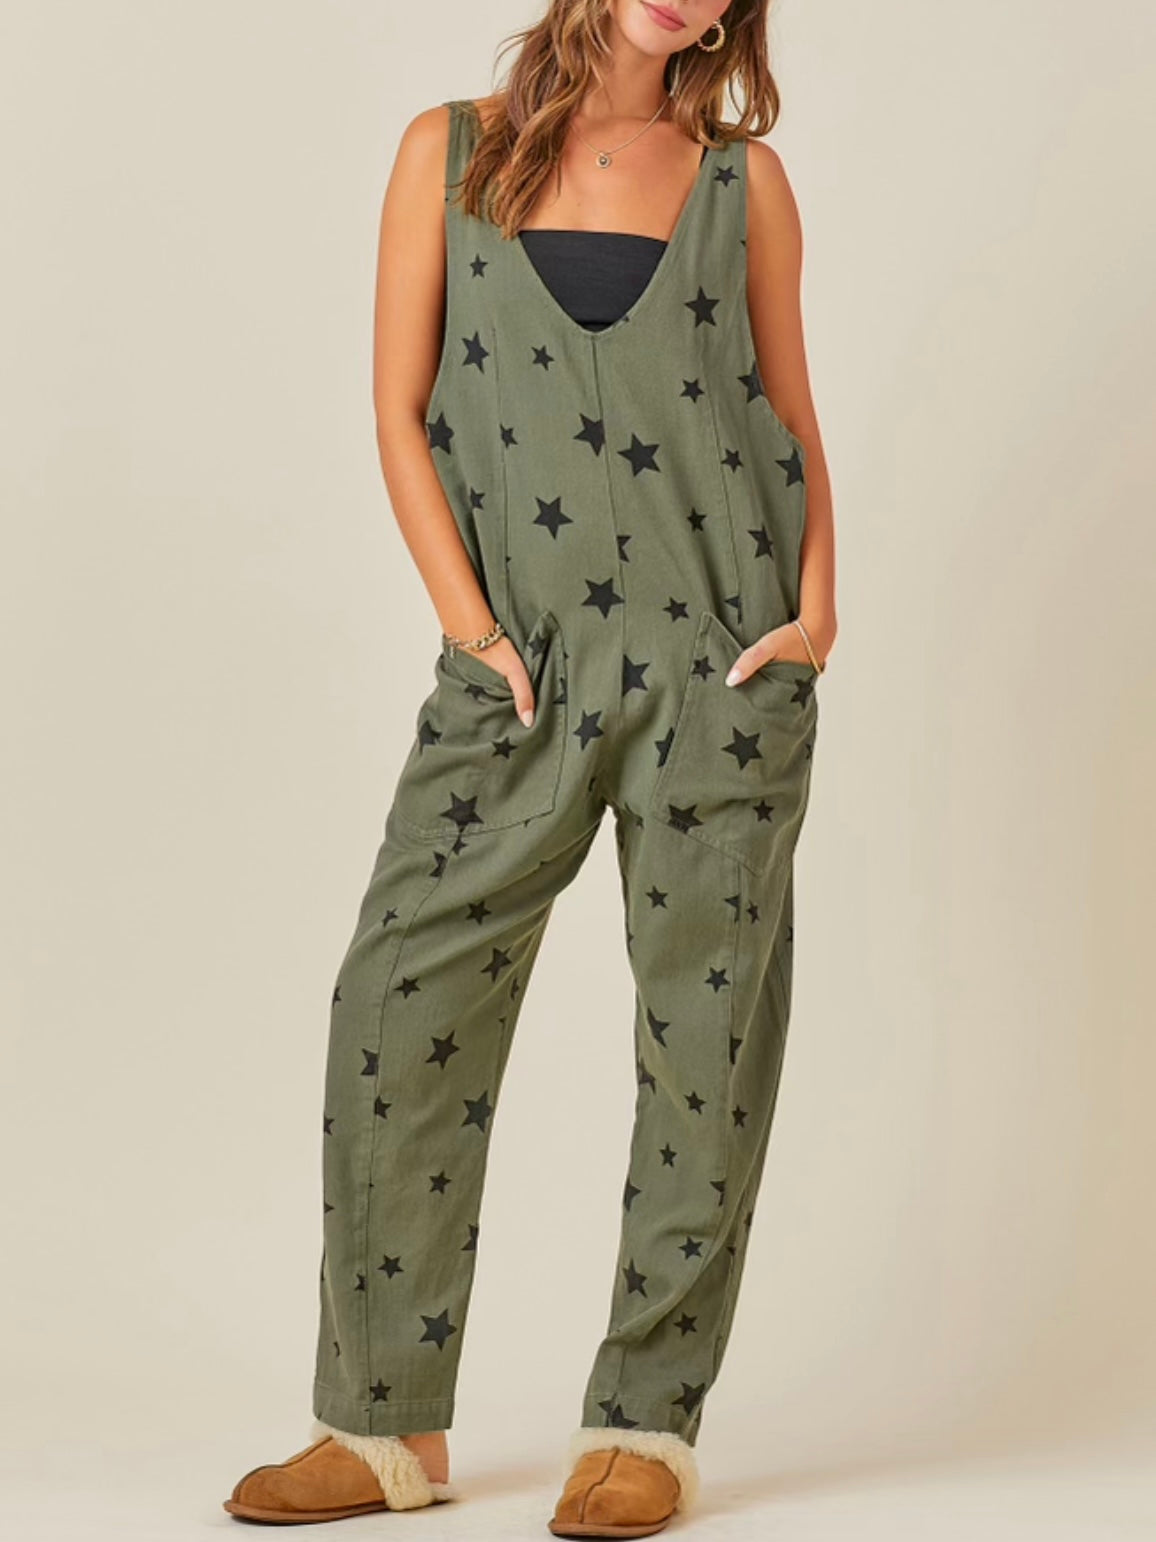 Olive green stars print jumper